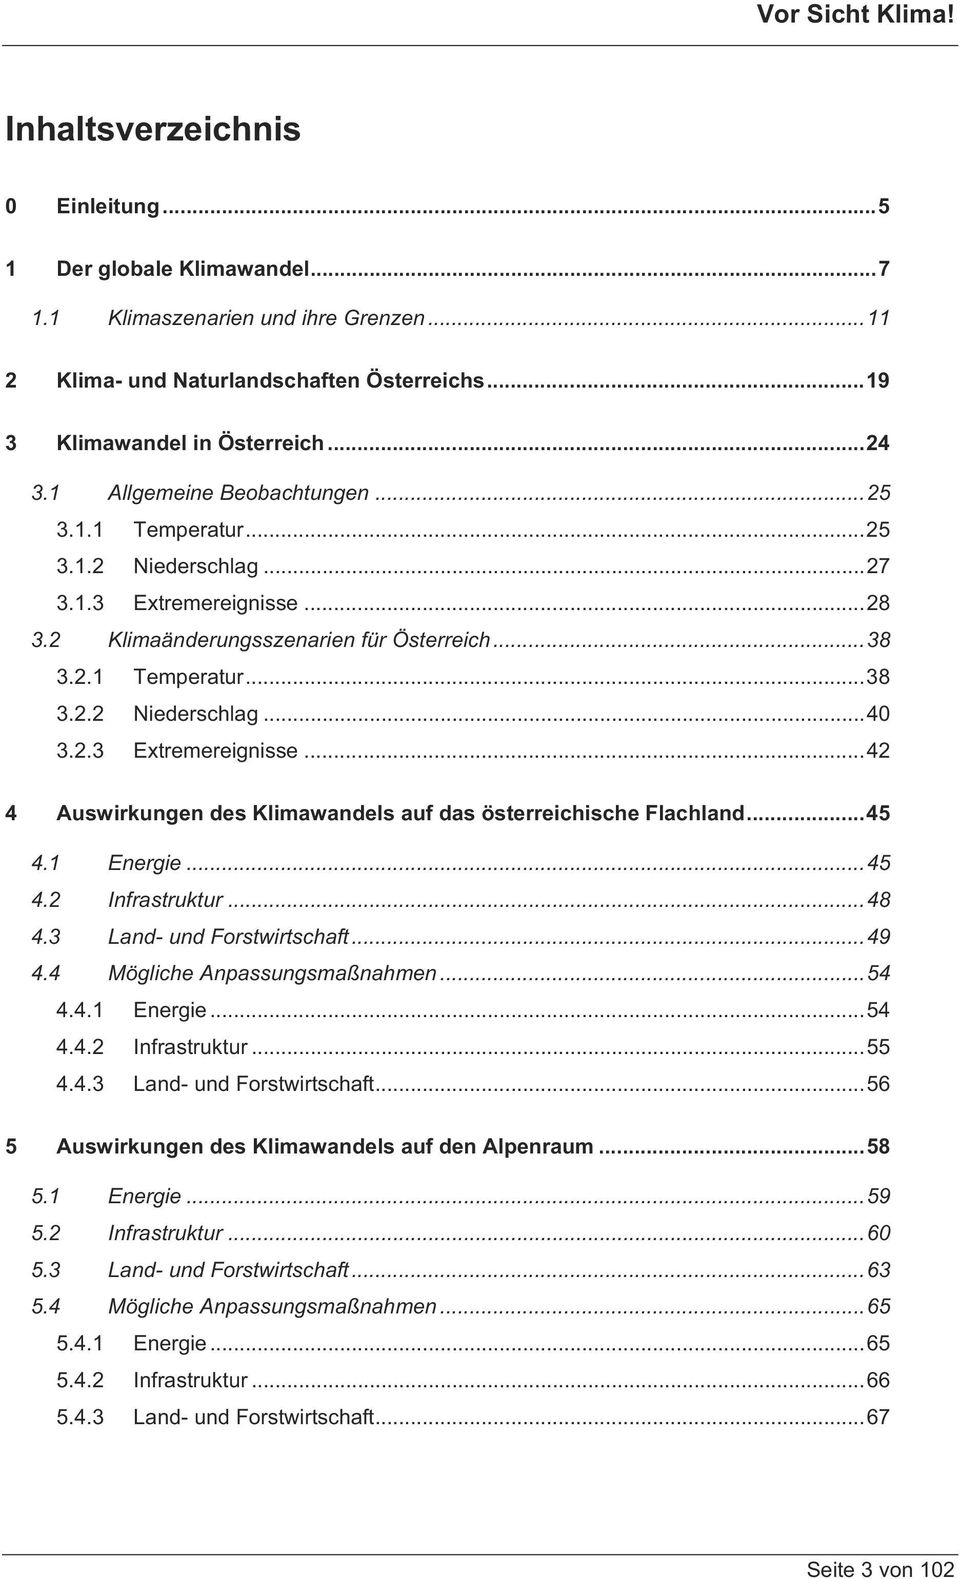 2.3 Extremereignisse...42 4 Auswirkungen des Klimawandels auf das österreichische Flachland...45 4.1 Energie...45 4.2 Infrastruktur...48 4.3 Land- und Forstwirtschaft...49 4.